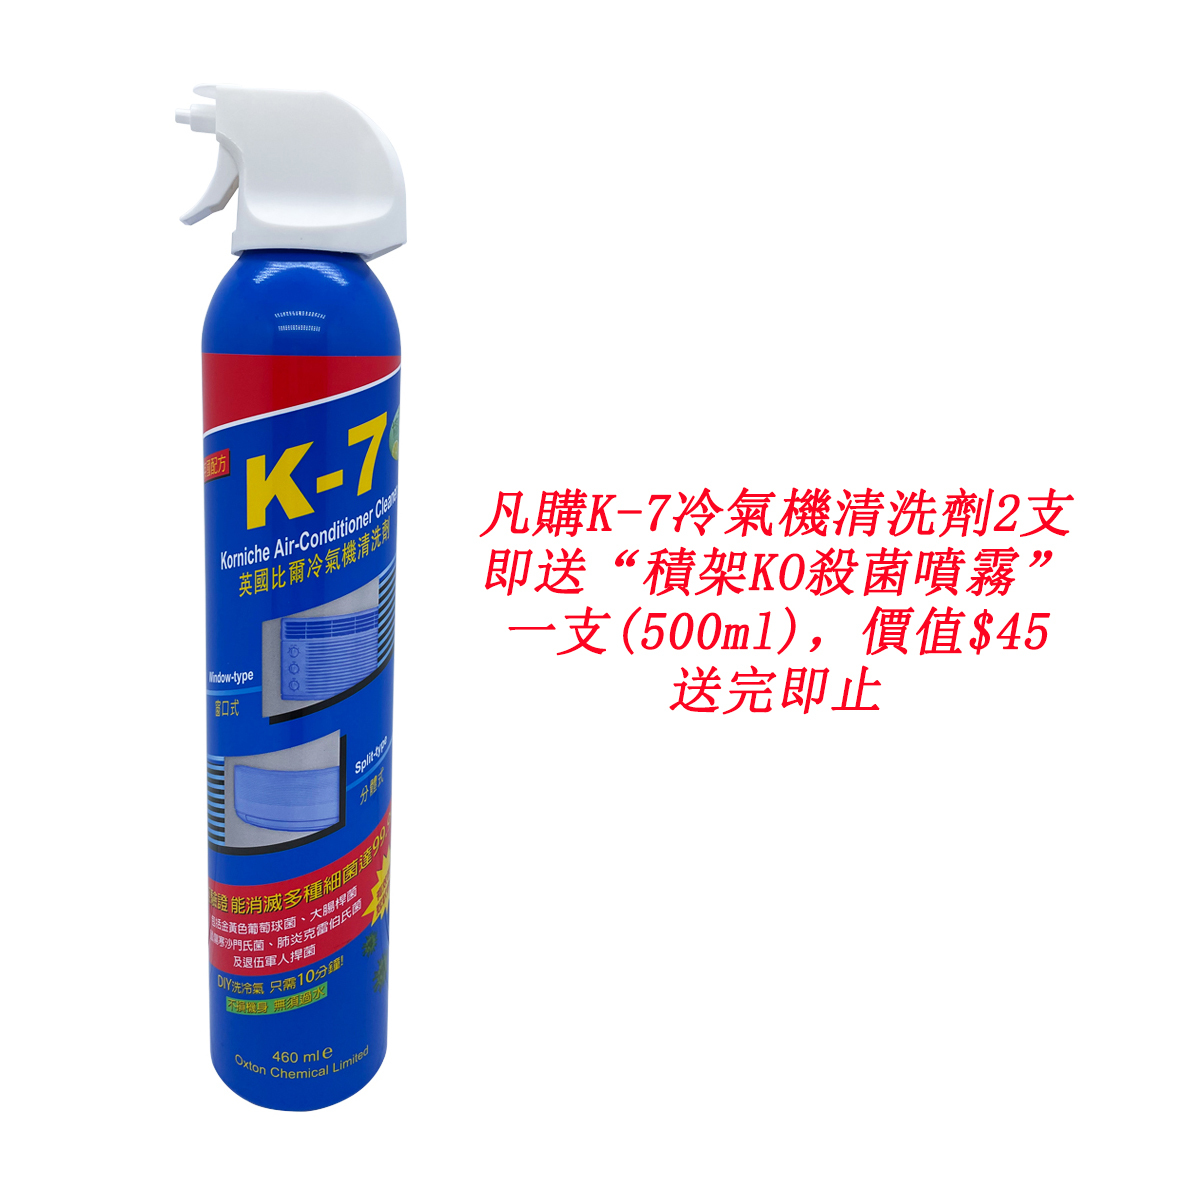 K7  冷氣機清洗劑 - 殺菌、除臭、消毒、除污、防霉 - 買2支送“積架KO殺菌噴霧”1支(500毫升)